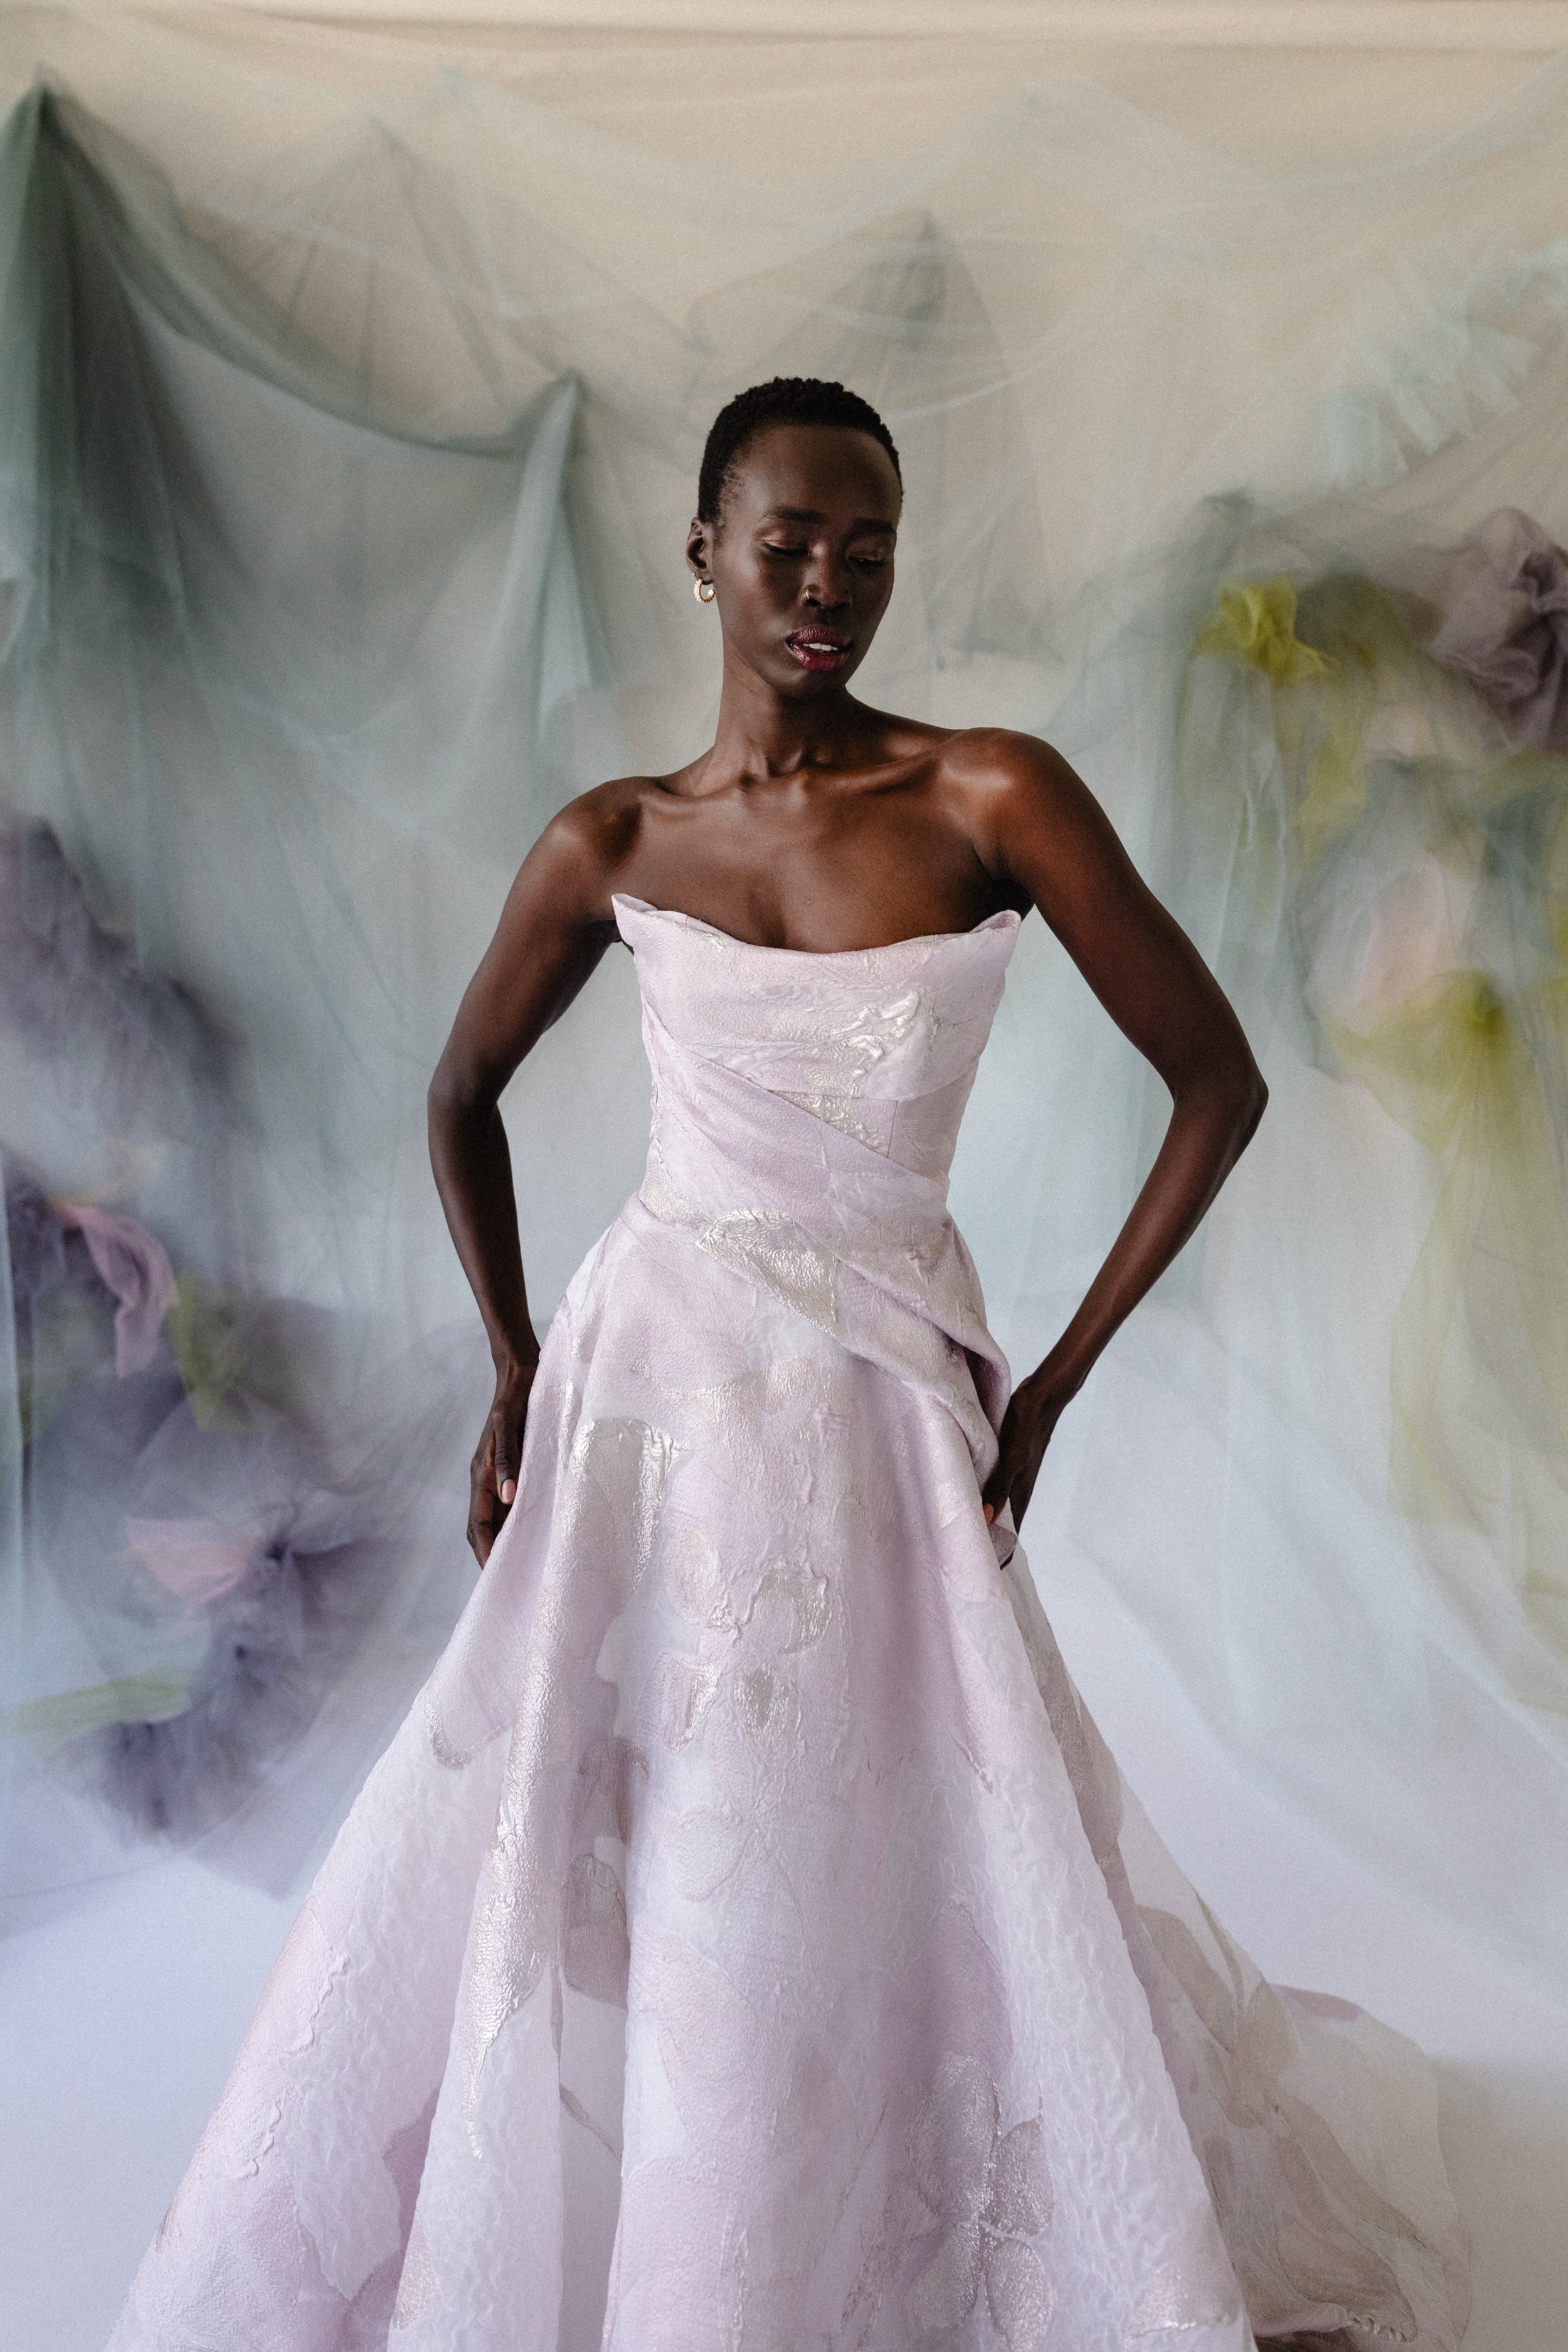 Lavender haze wedding gown1.jpg